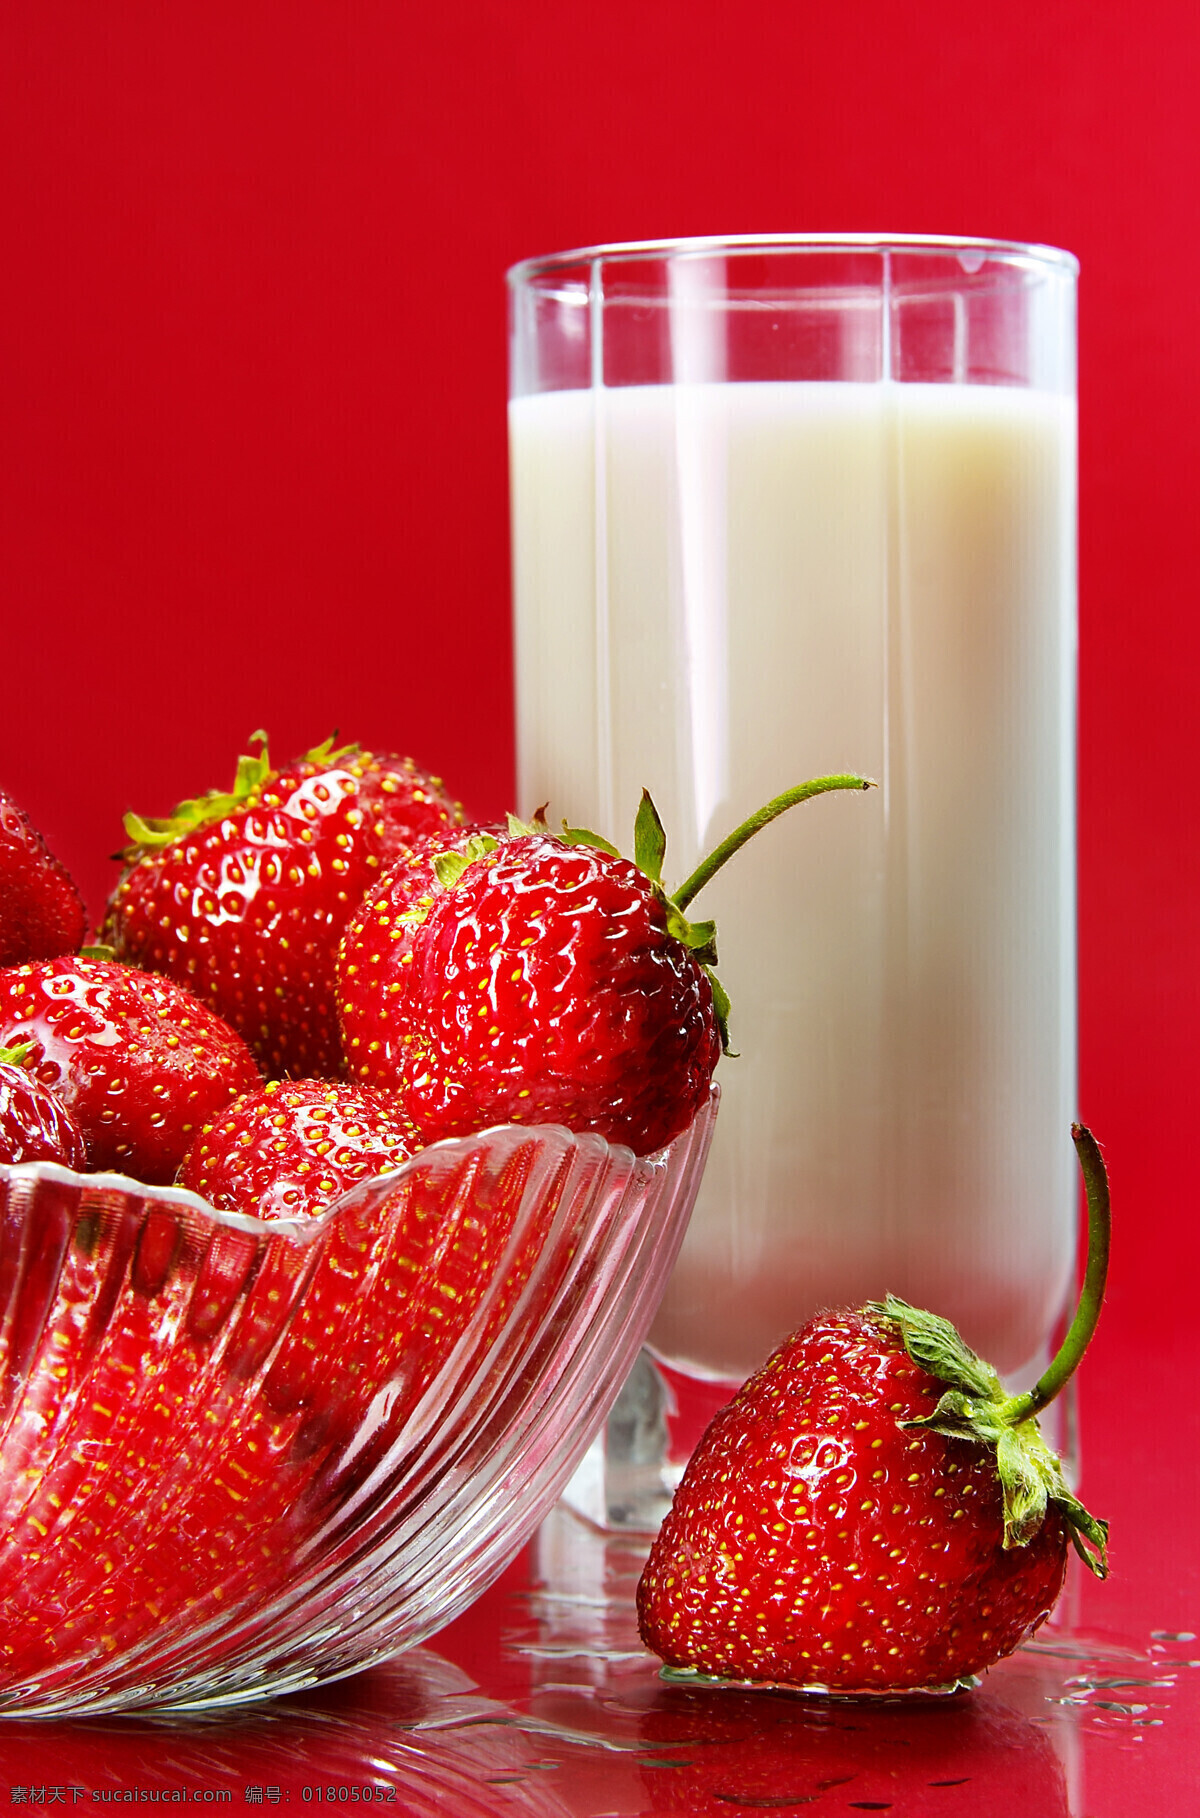 草莓 牛奶 健康 生物世界 水果 营养 草莓和牛奶 草莓主题 psd源文件 餐饮素材